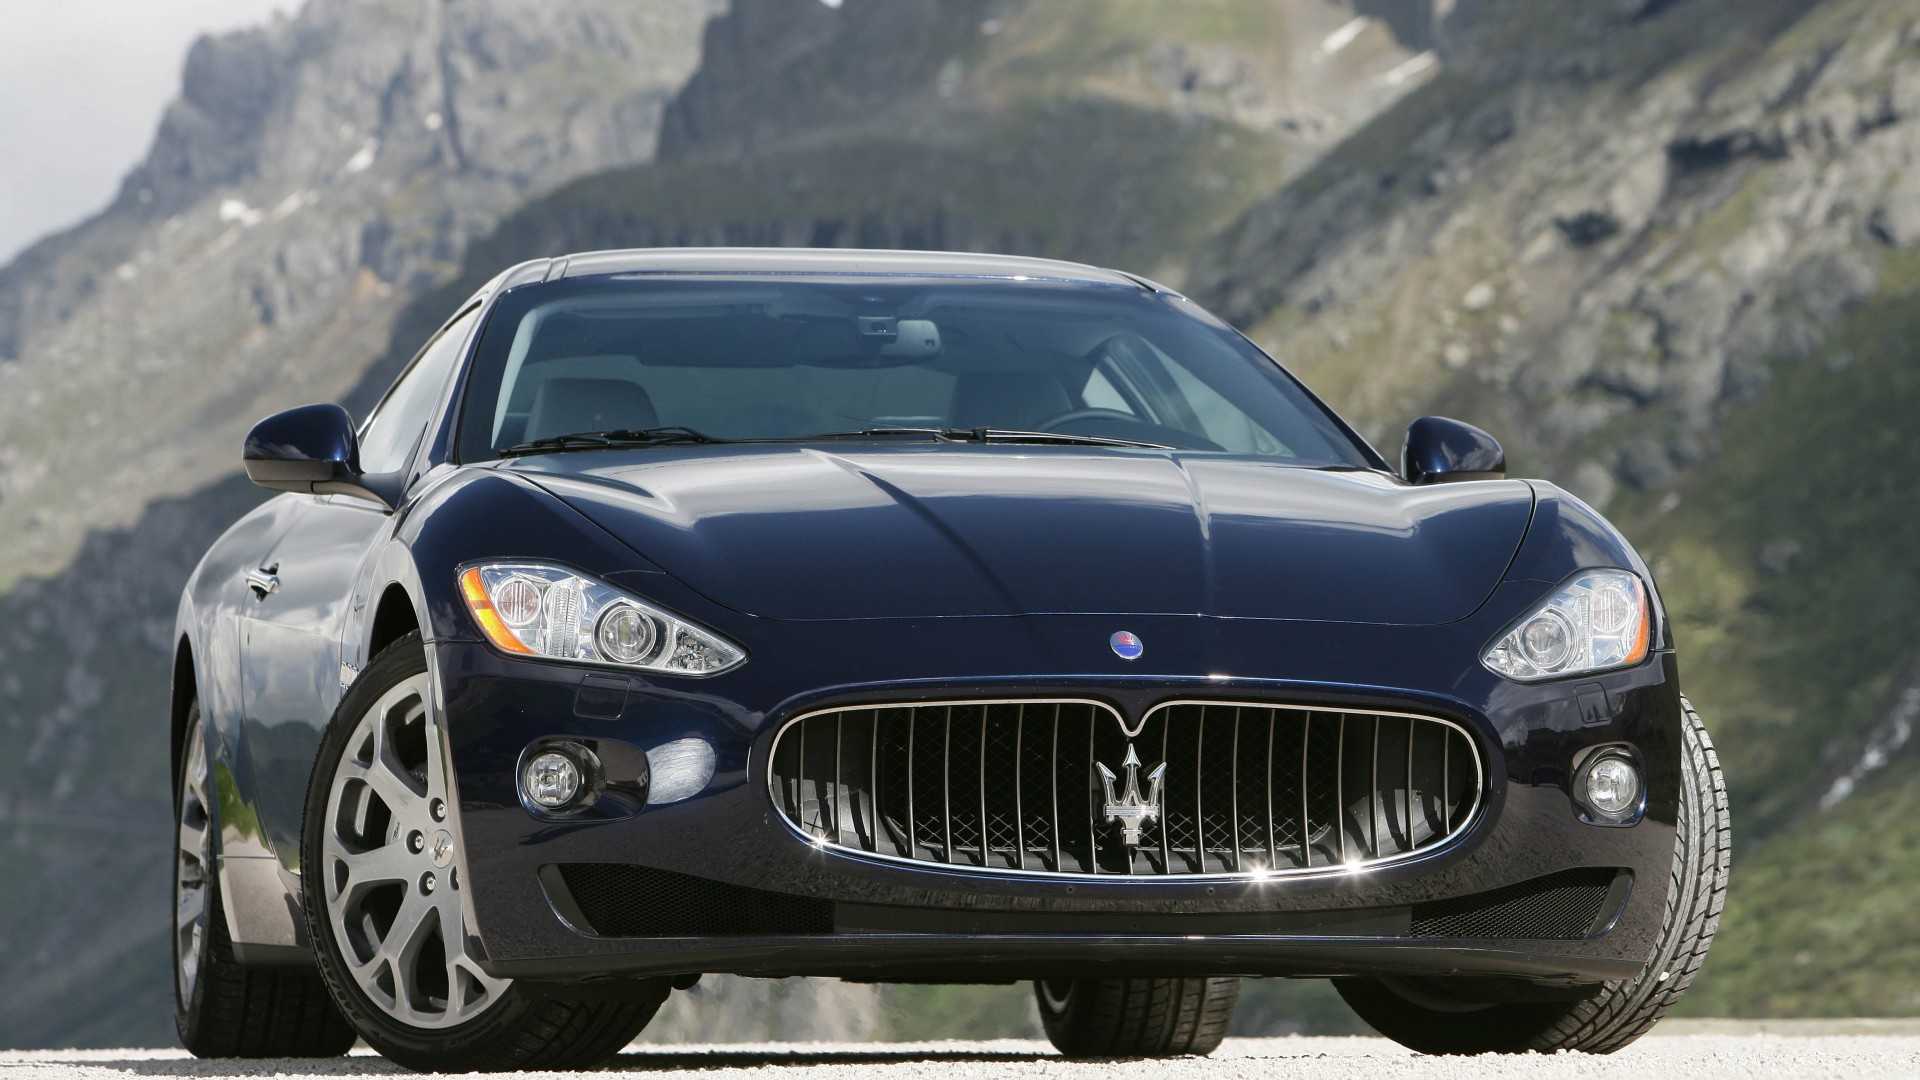 Начало выпуска Maserati GranTurismo дизайн экстерьера интерьера технические характеристики модель GranTurismo S трансмиссия и подвеска рестайлинг модели стоимость